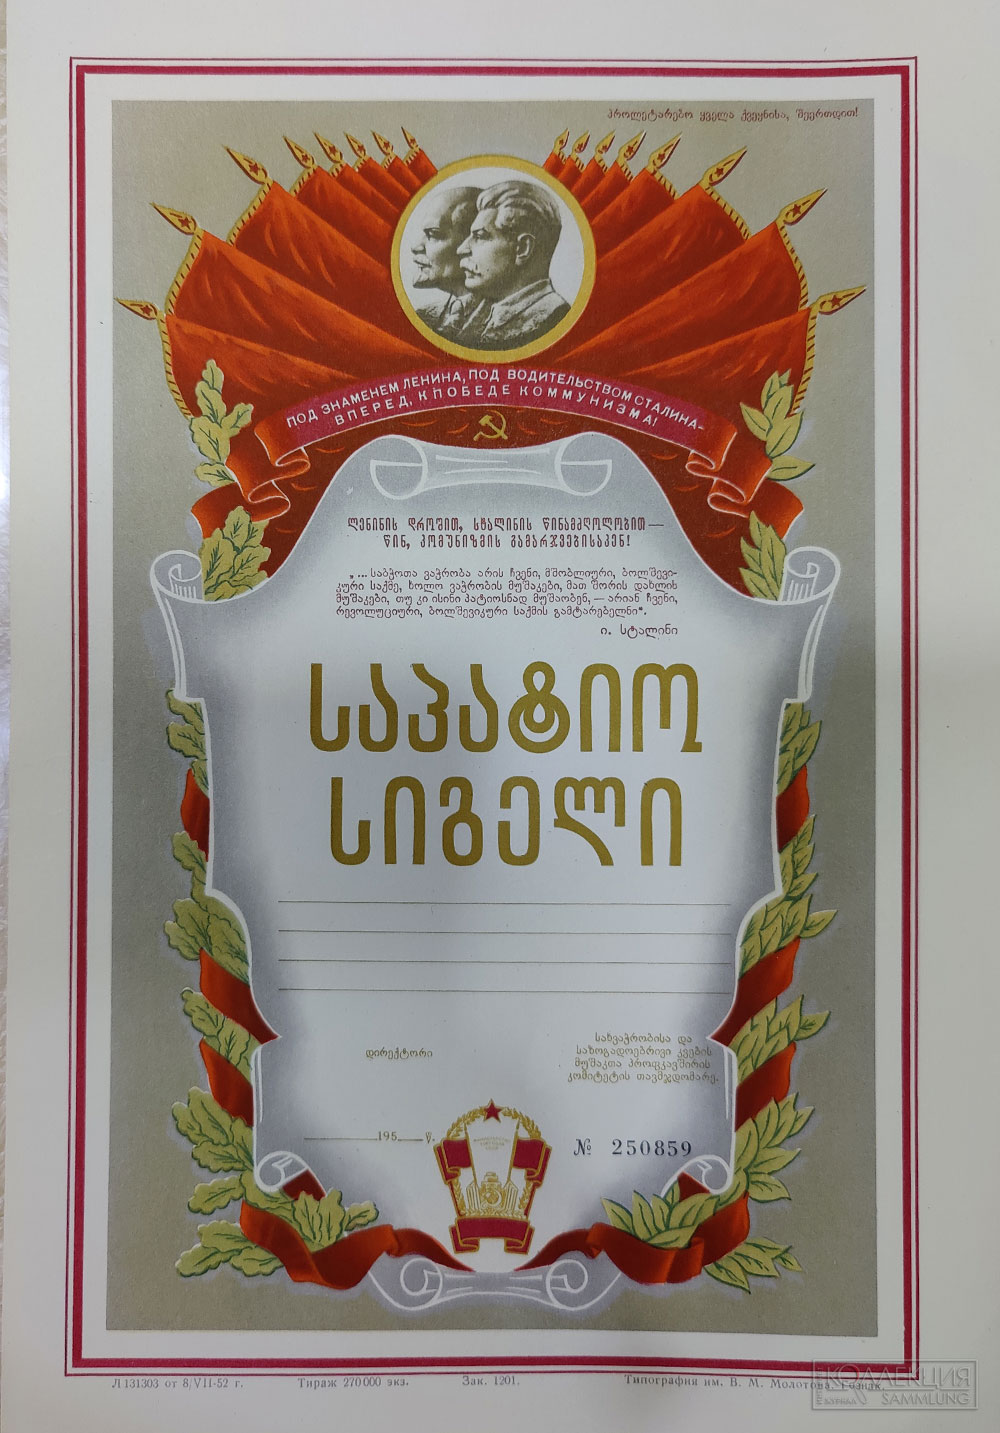 Почётная грамота 1950-х годов, выполненная на грузинском языке. К сожалению грамота была не вручена